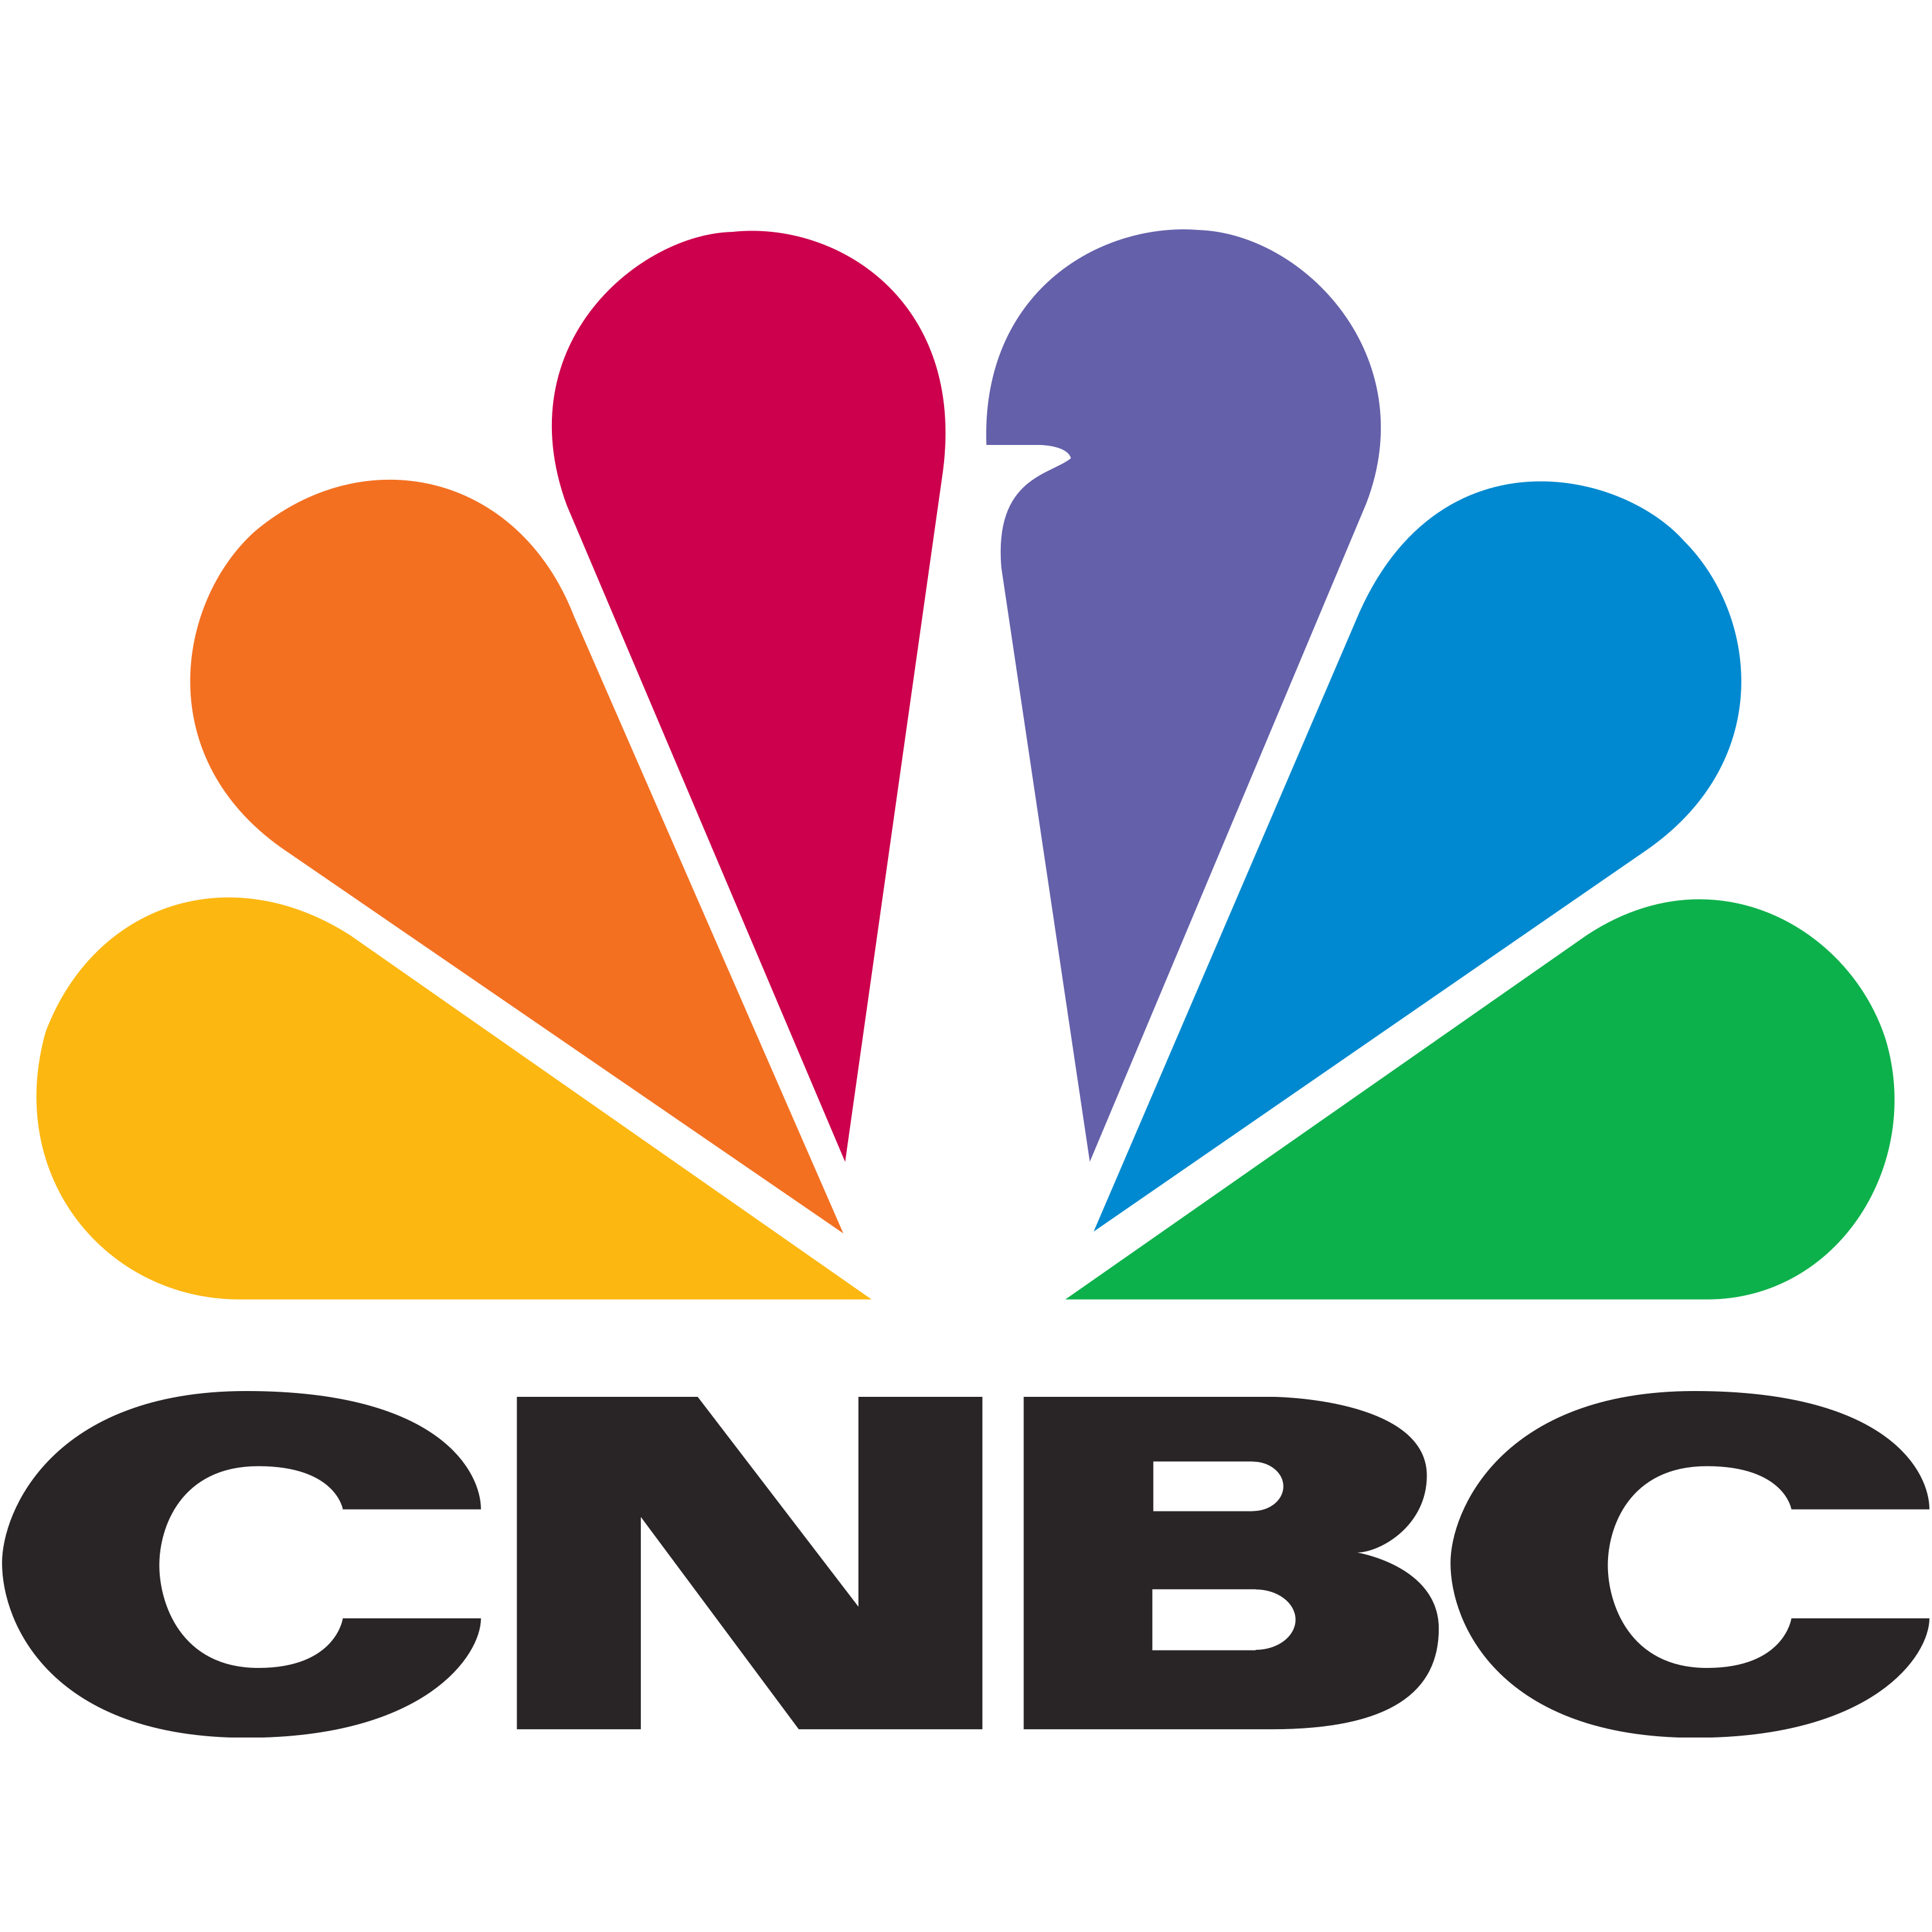 CNBC Logo Transparent Image